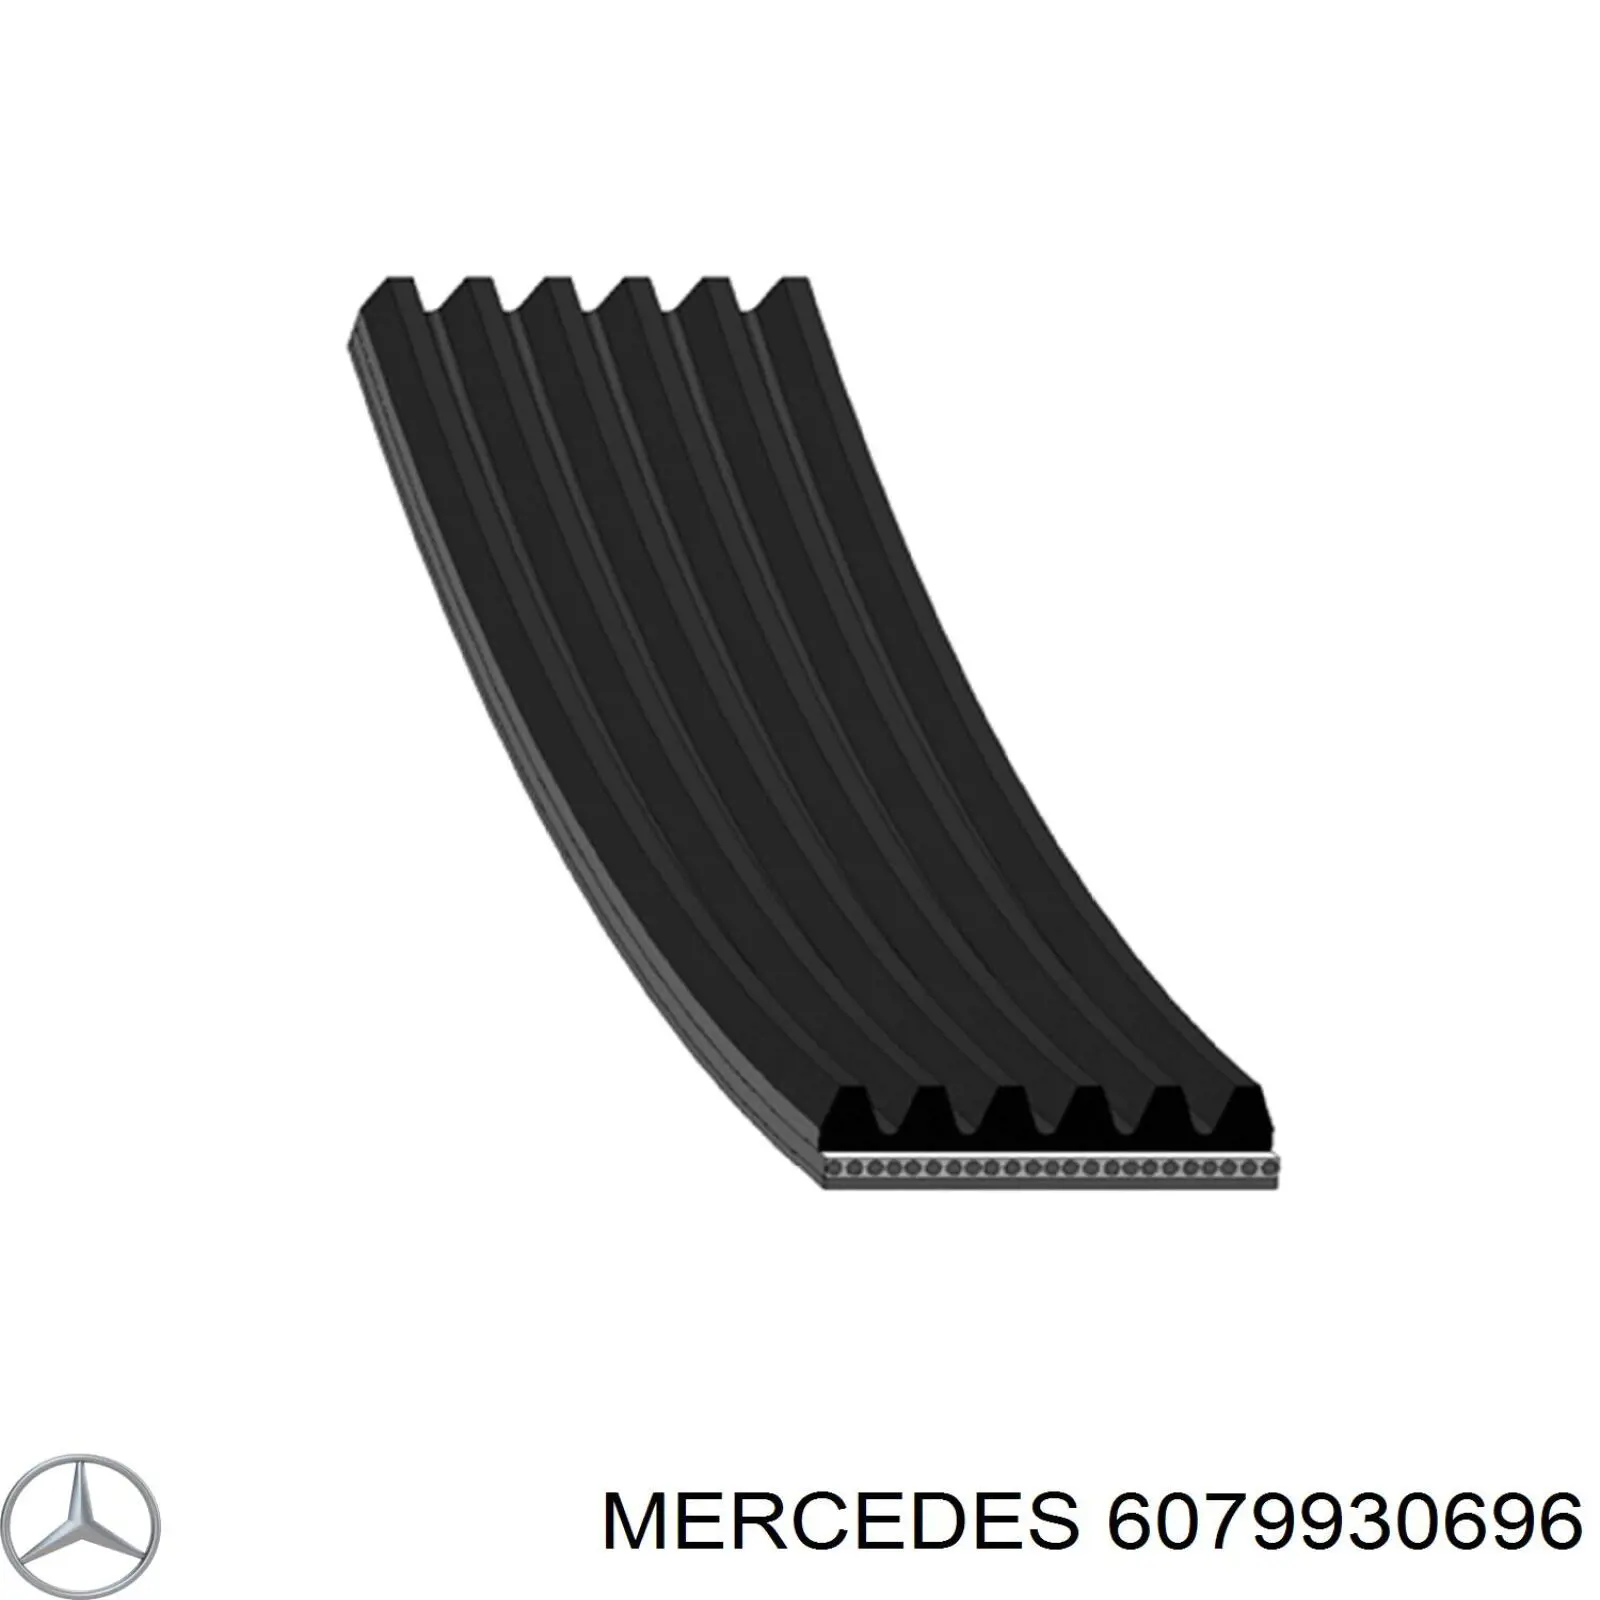 6079930696 Mercedes correa trapezoidal